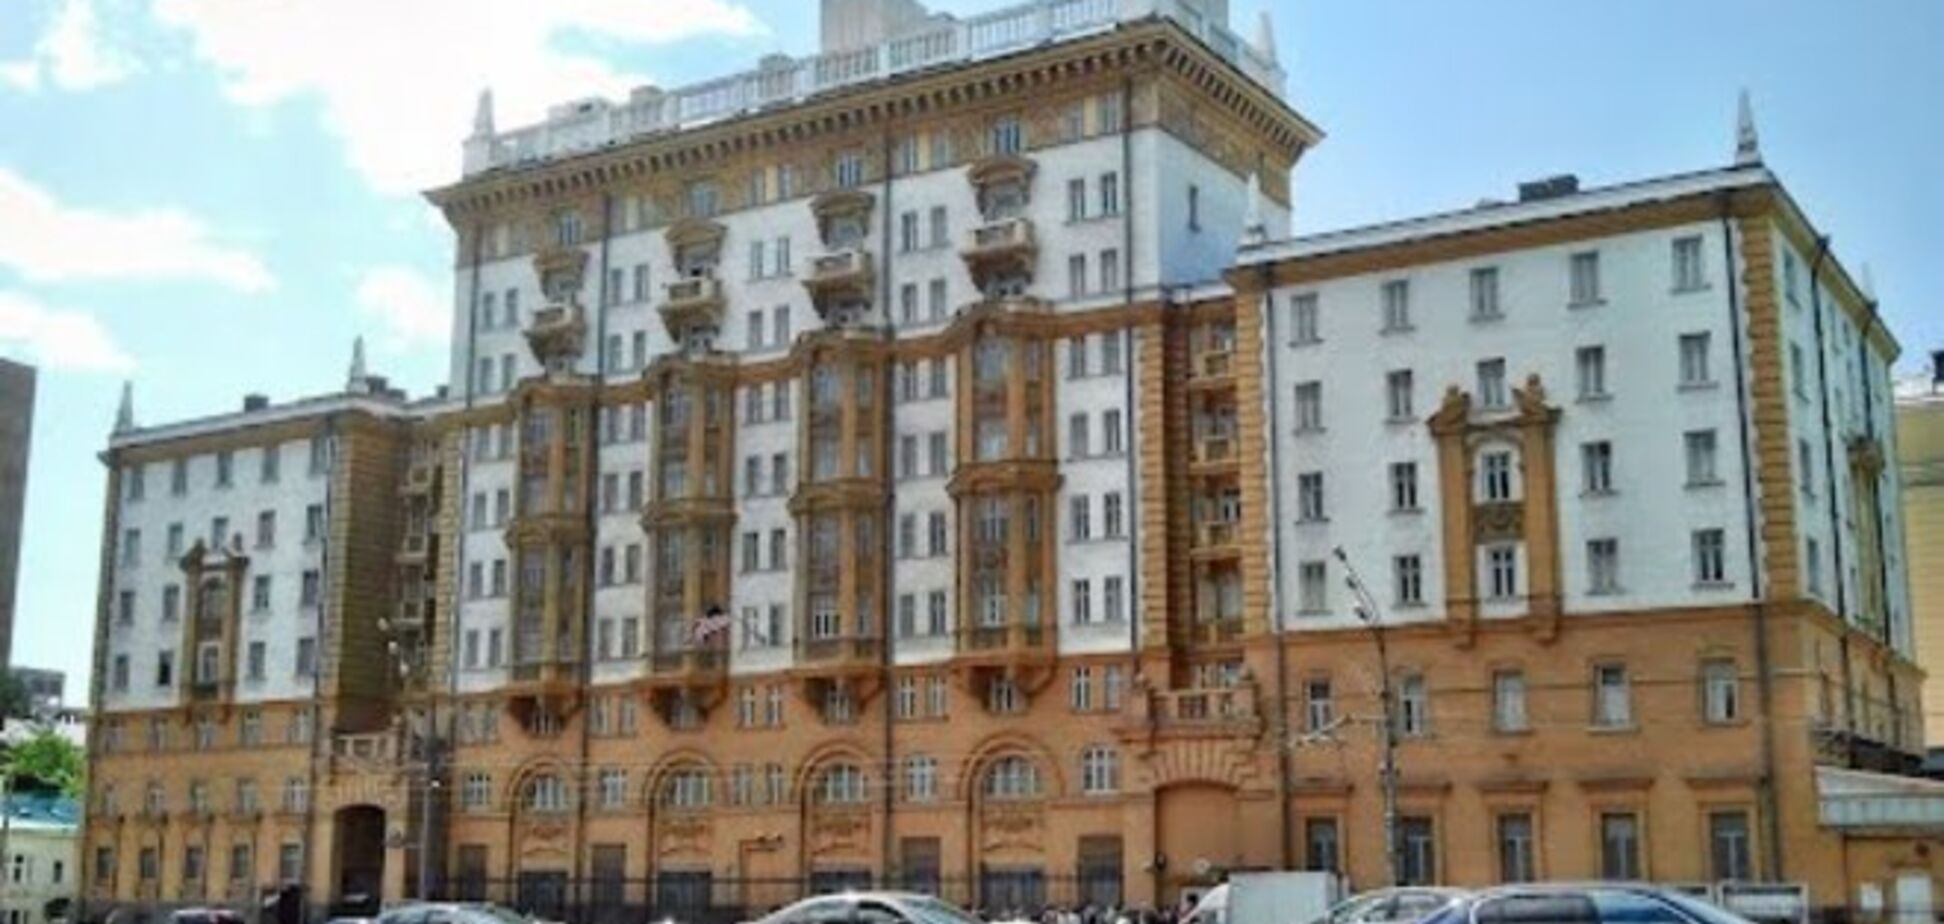 Голый россиянин пытался проникнуть на территорию посольства США в Москве